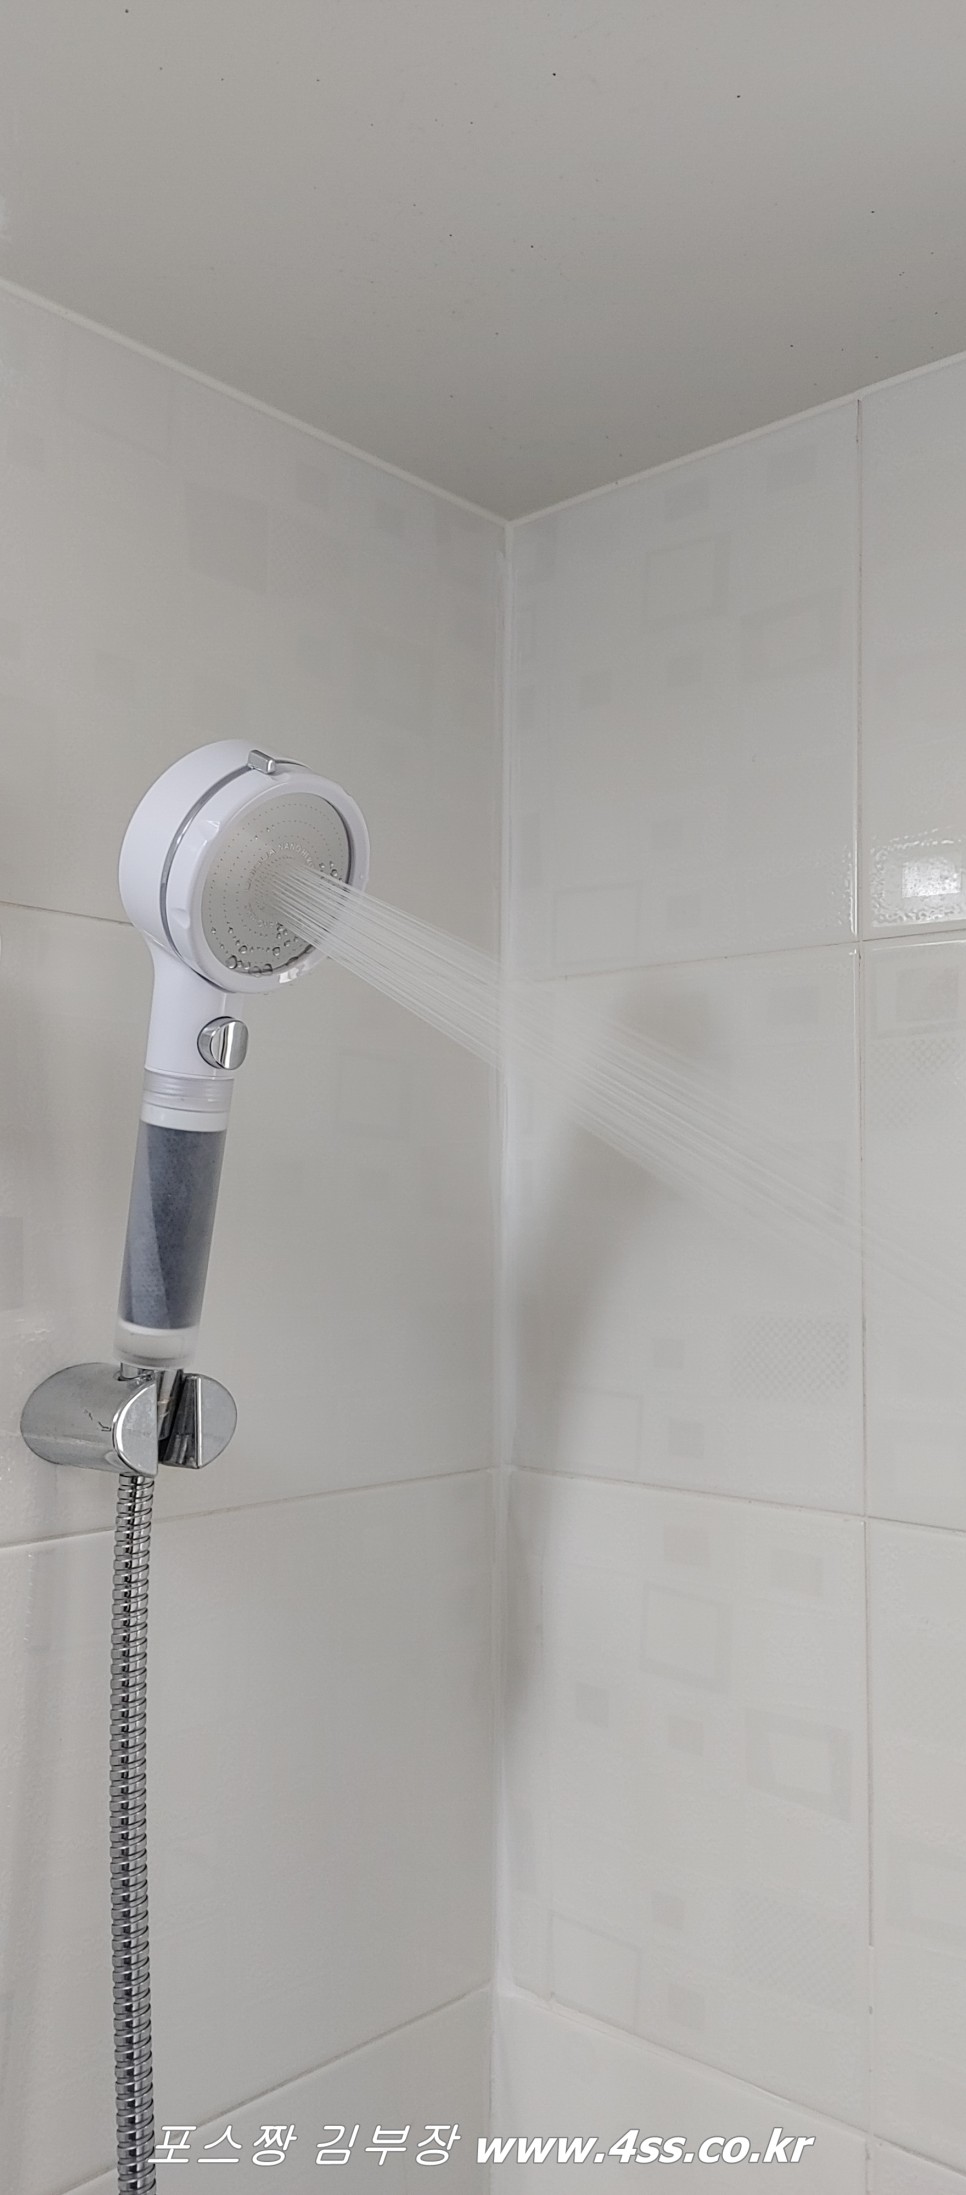 욕실수전필터 유니쿠아 나노히어로 진짜 나노 필터 적용 샤워기